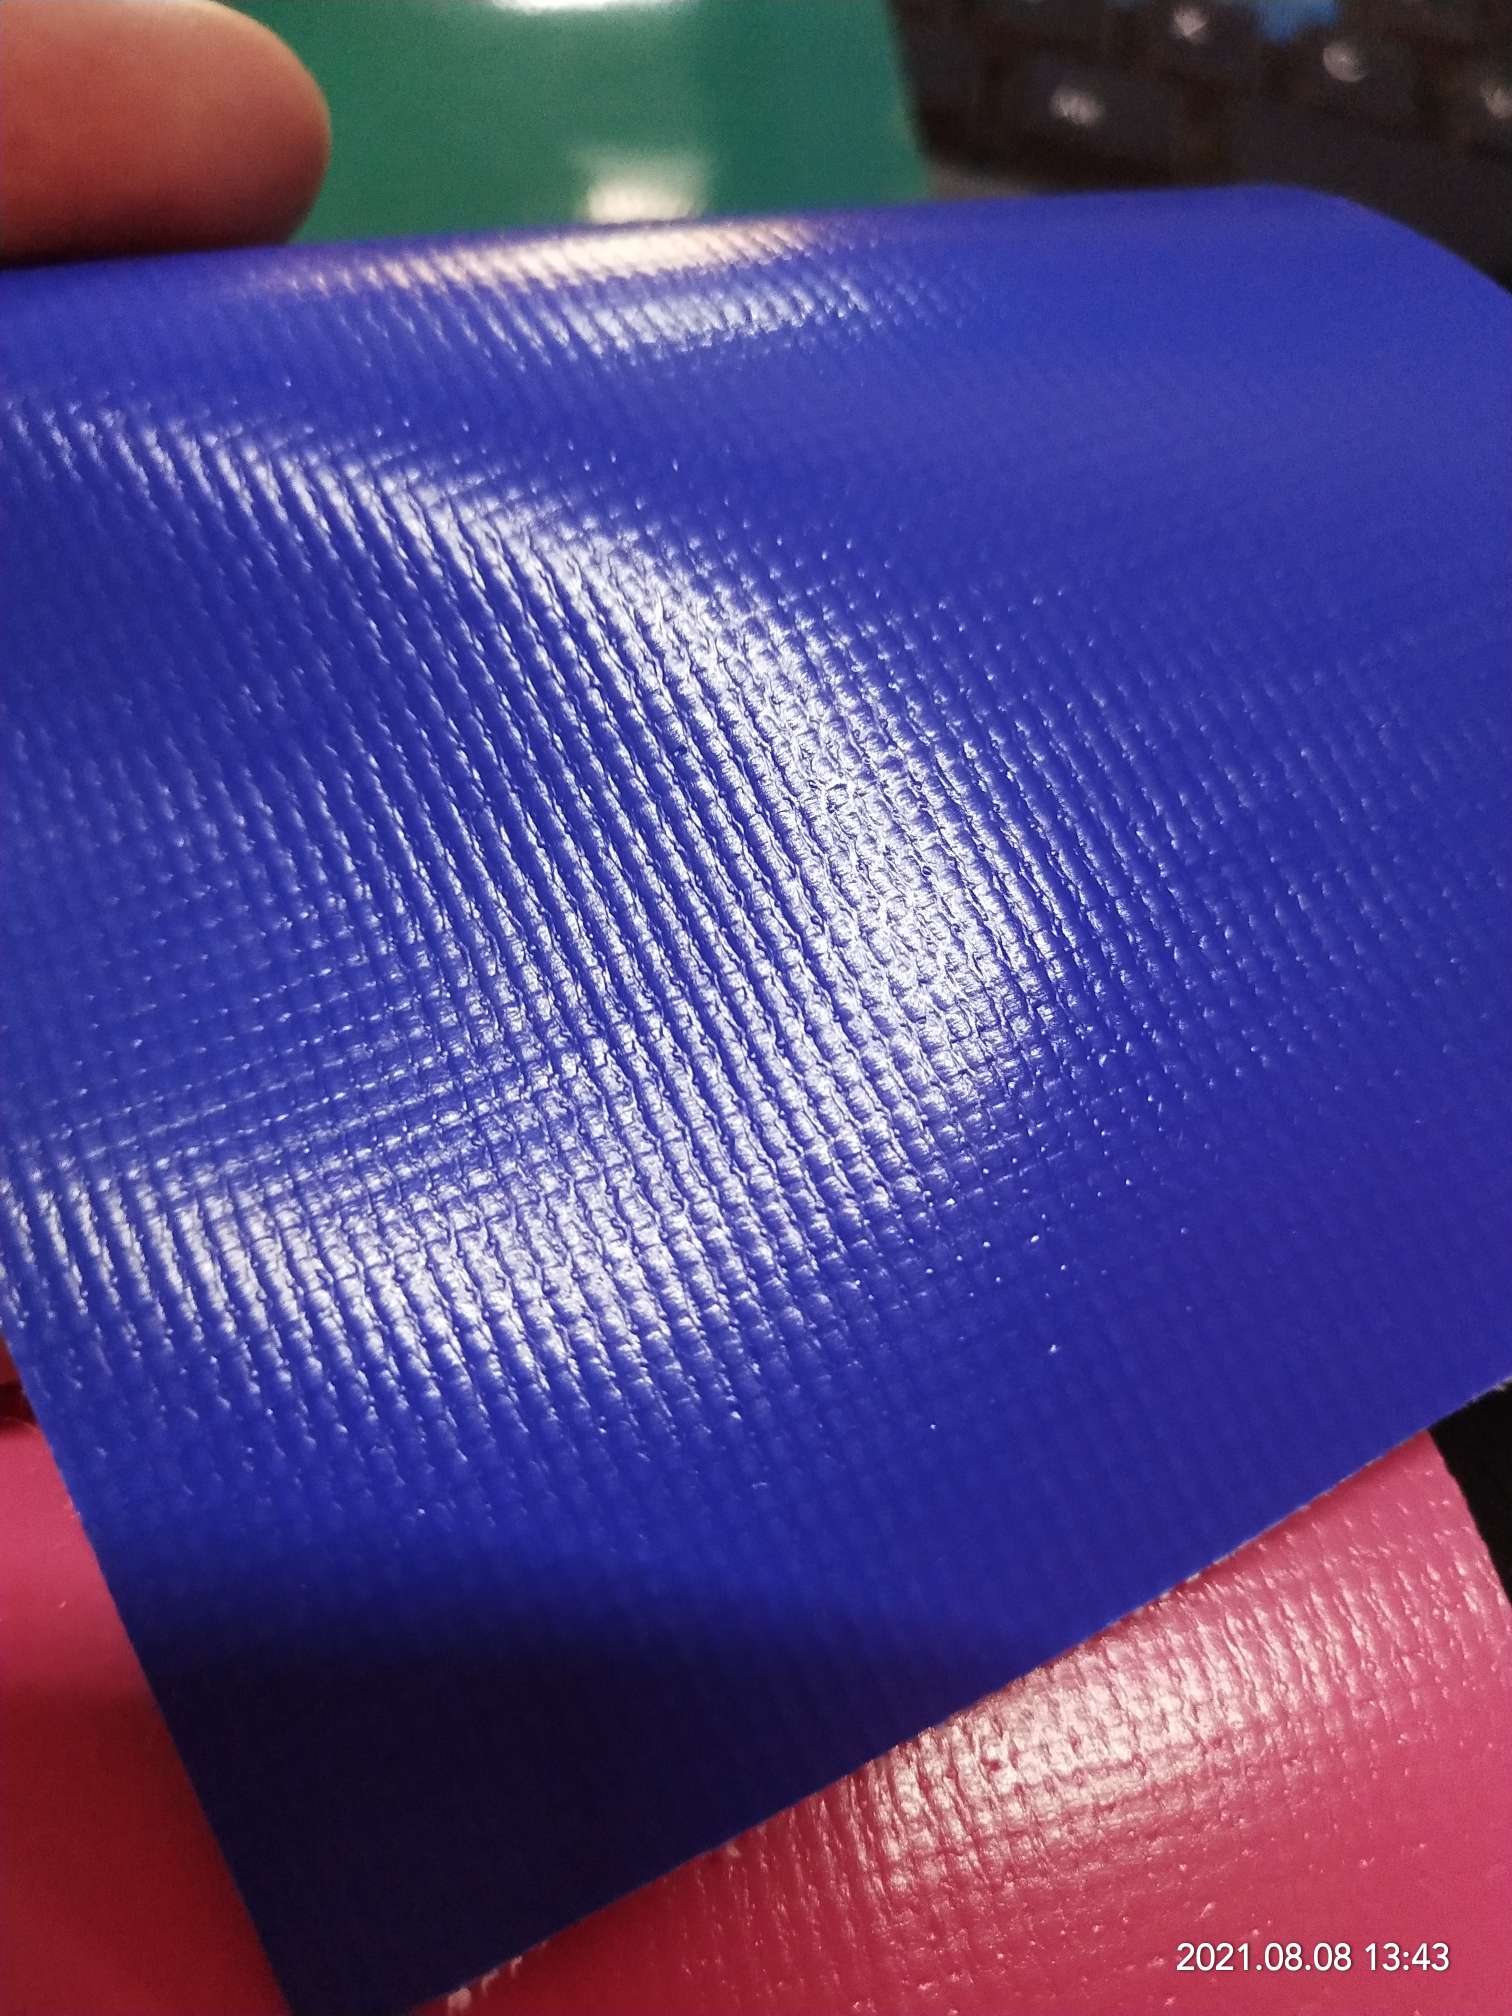 优质光面0.47mm厚深蓝色PVC夹网布  箱包布  机器罩家具罩  体育游乐产品  格种箱包袋专用面料详情图4